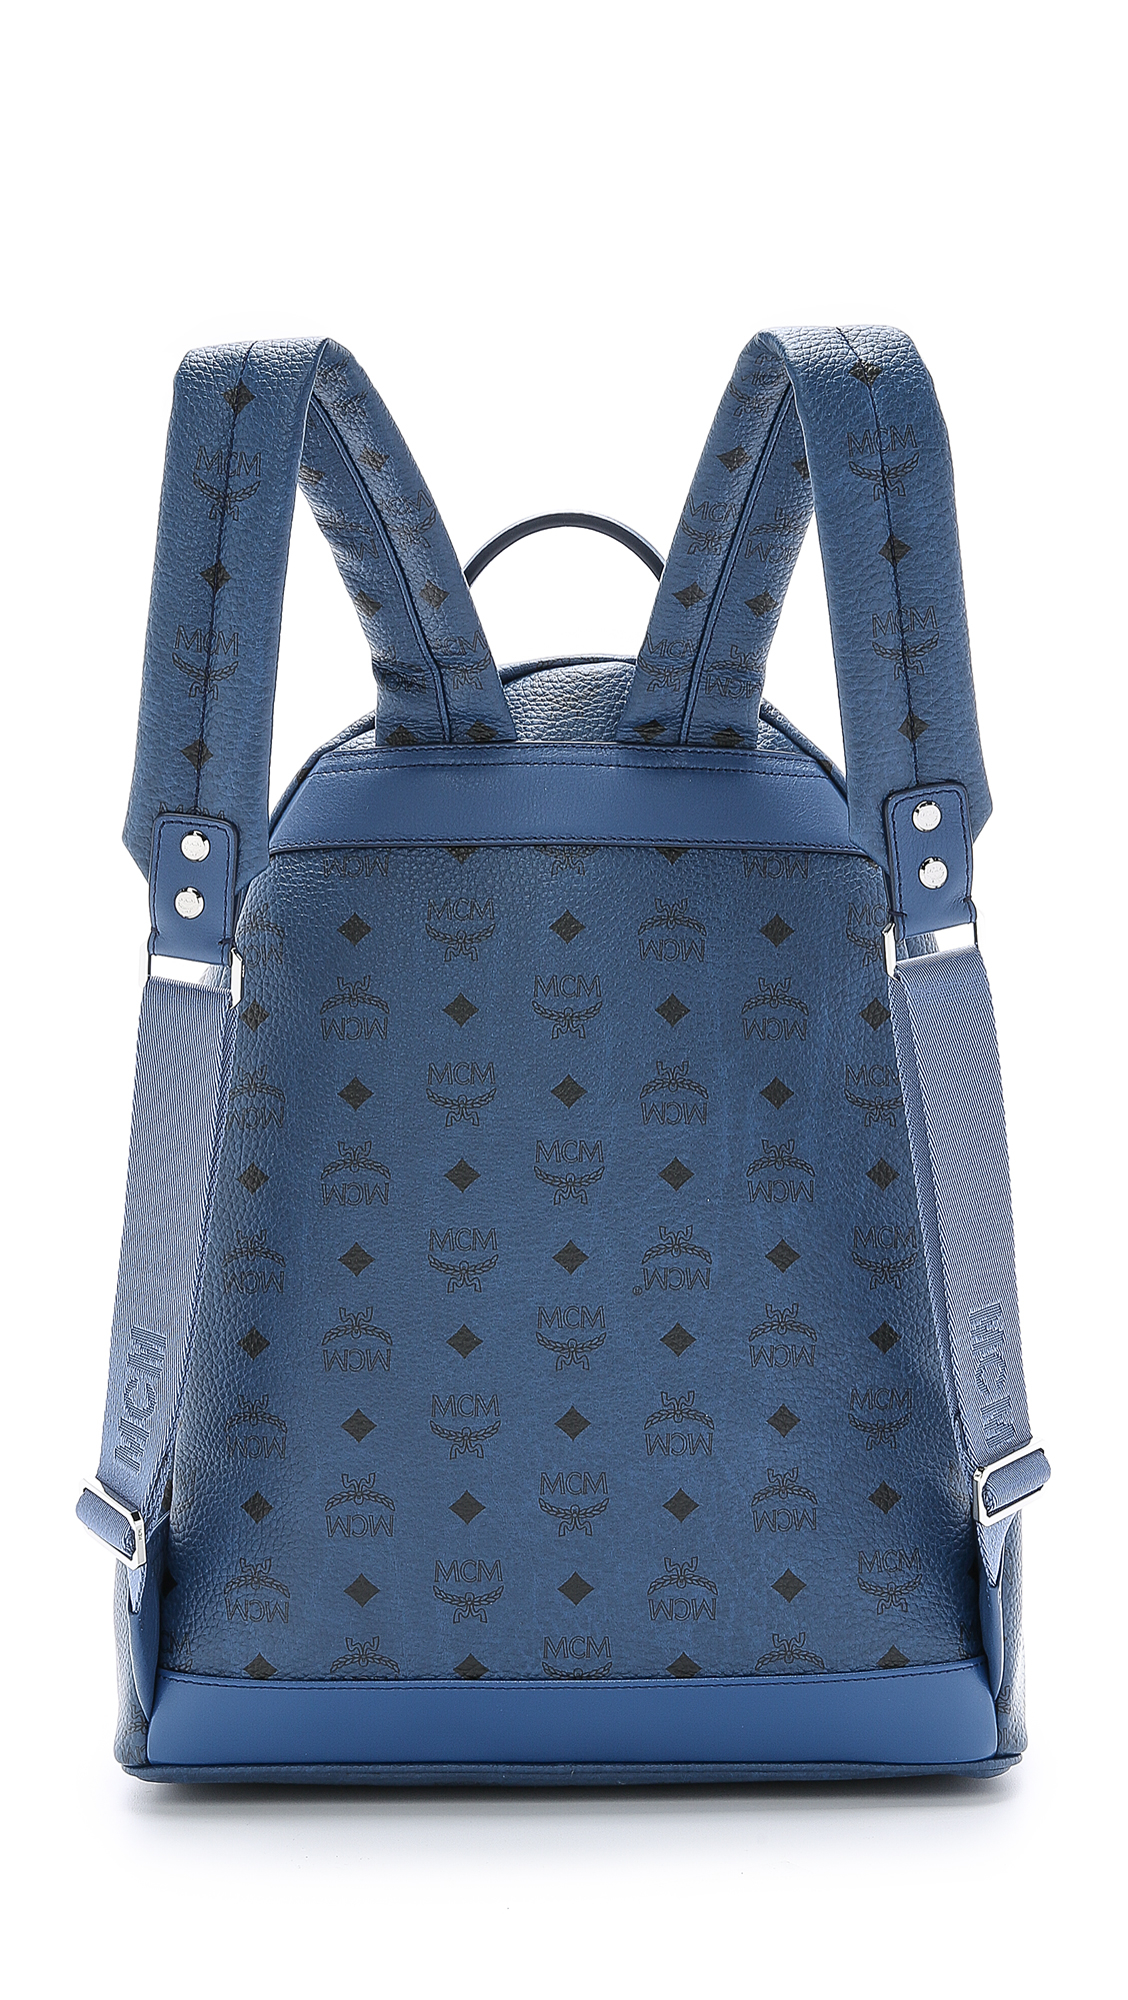 MCM M Studded Stark Backpack in Navy (Blue) for Men - Lyst